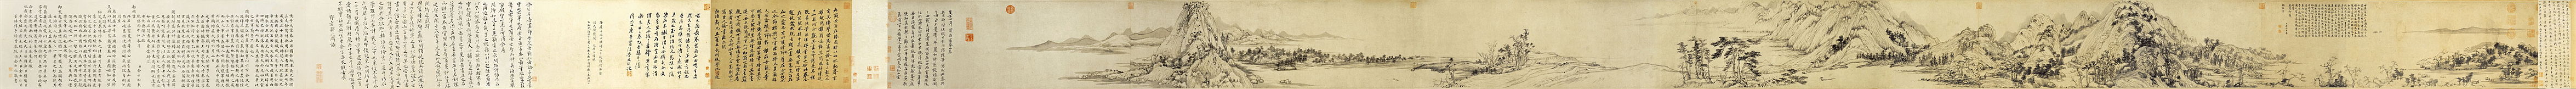 Zweite Hälfte des Werks In den Fuchun-Bergen verweilend, von Huang Gongwang (Bildanfang ganz rechts)